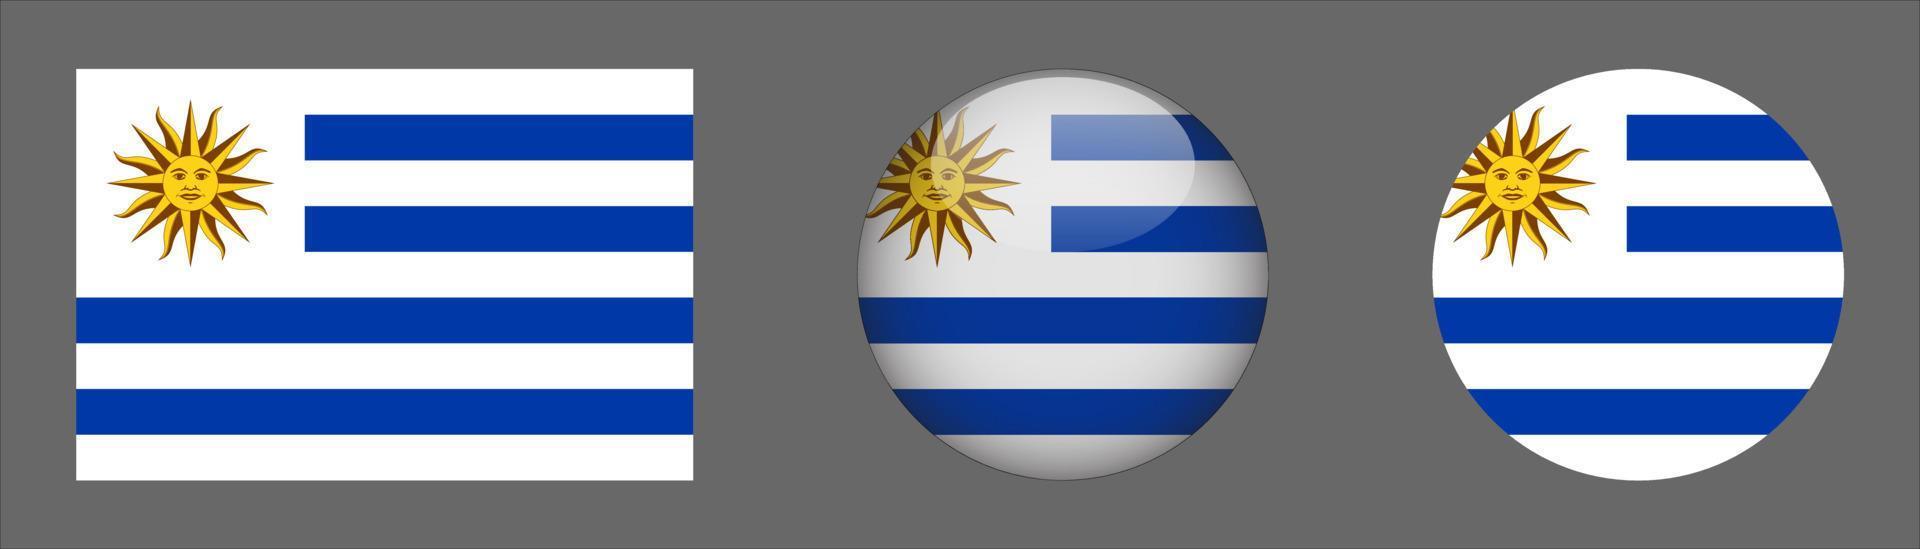 colección de conjuntos de bandera de uruguay, relación de tamaño original, redondeado 3d, redondeado plano. vector